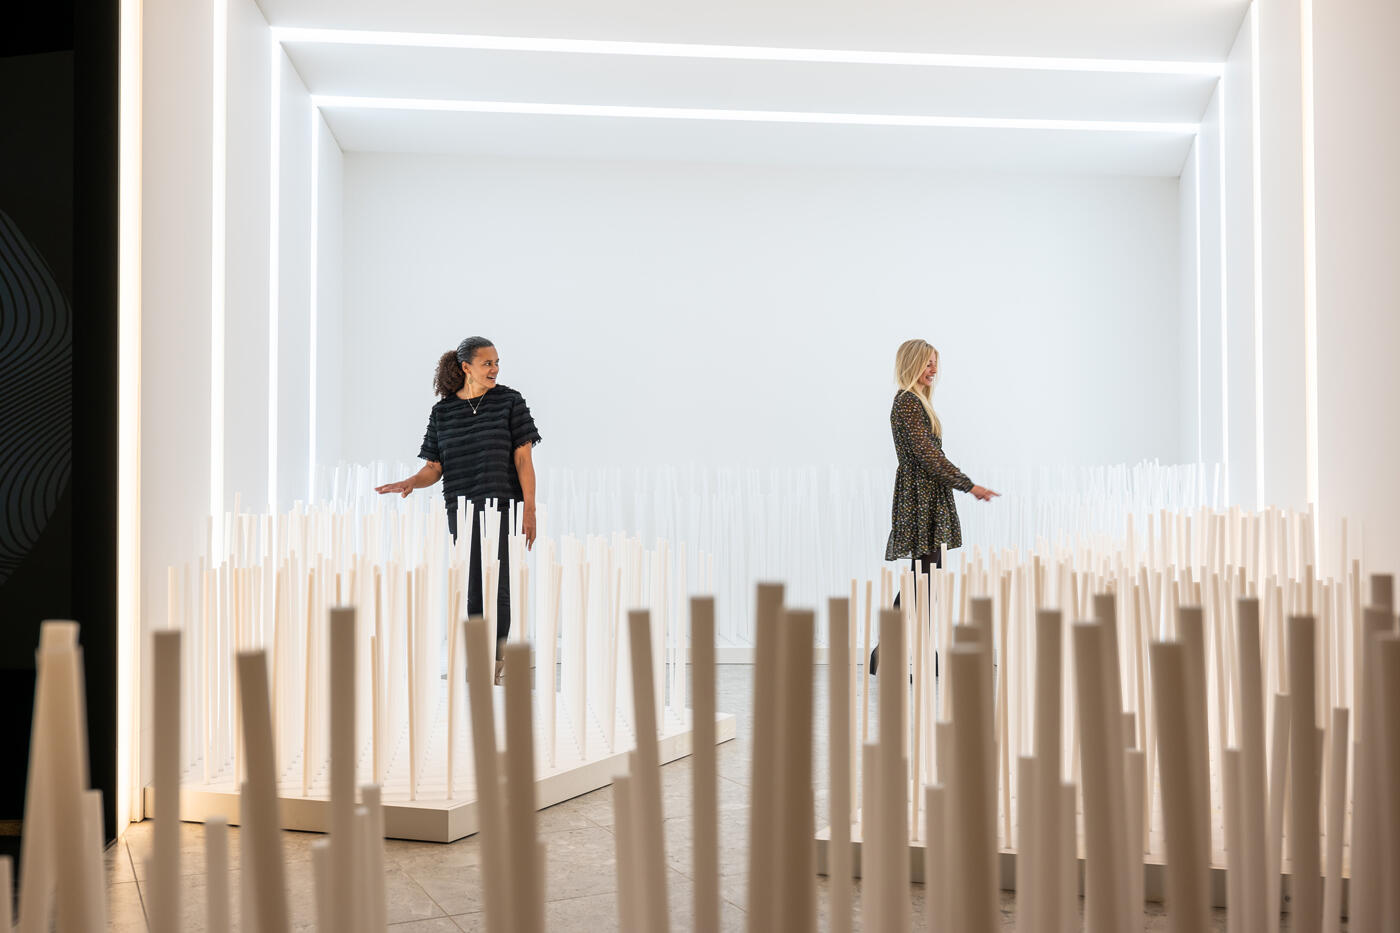 Zwei Frauen in einem Ausstellungesraum. Am Boden stehen verschiedene Holsstecken.